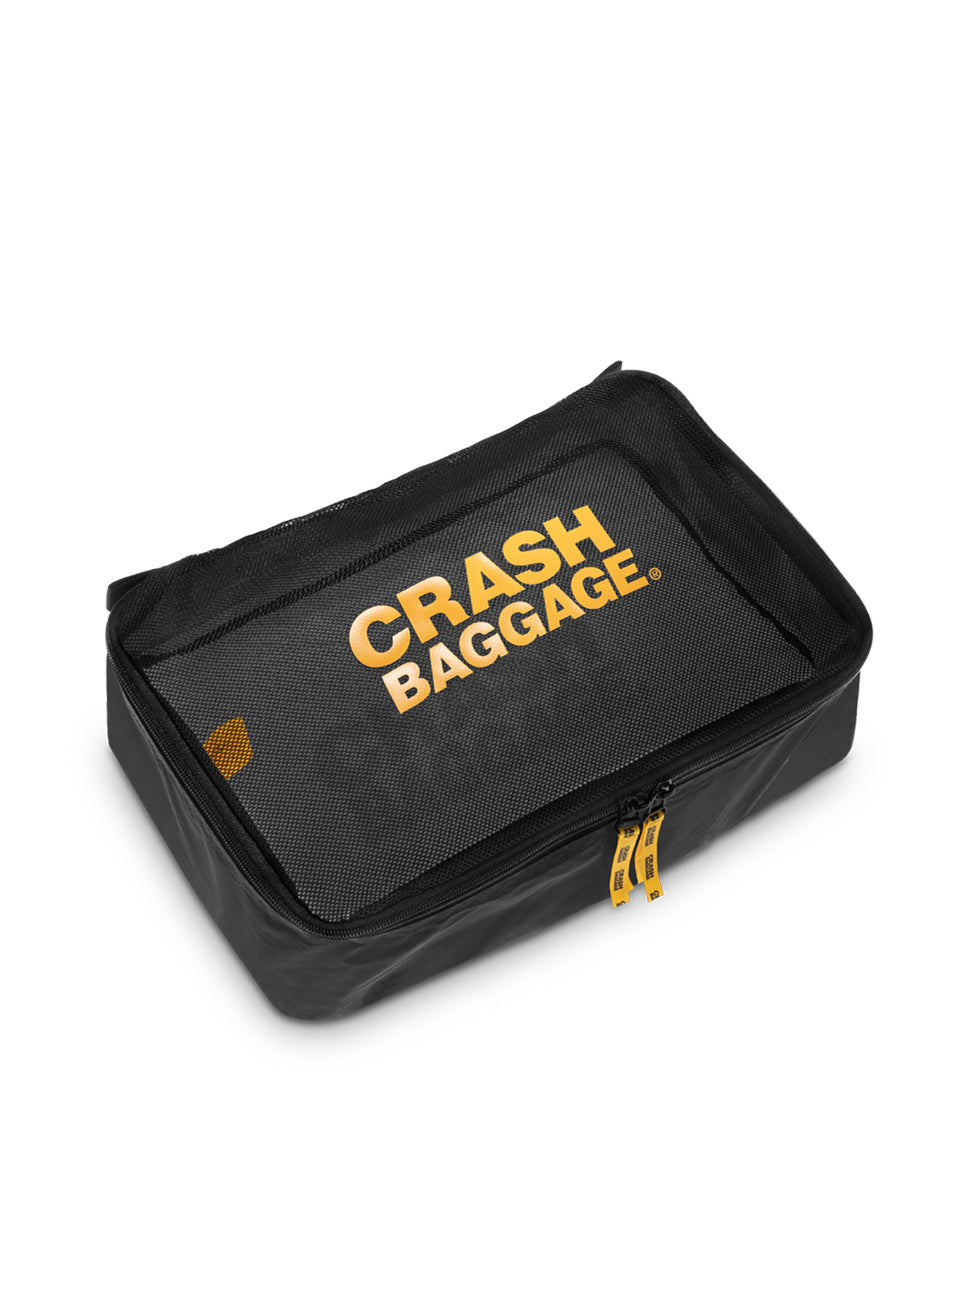 Crash Baggage Easy Life Kit 4-piece Packing Organizer, CB360 001, Black